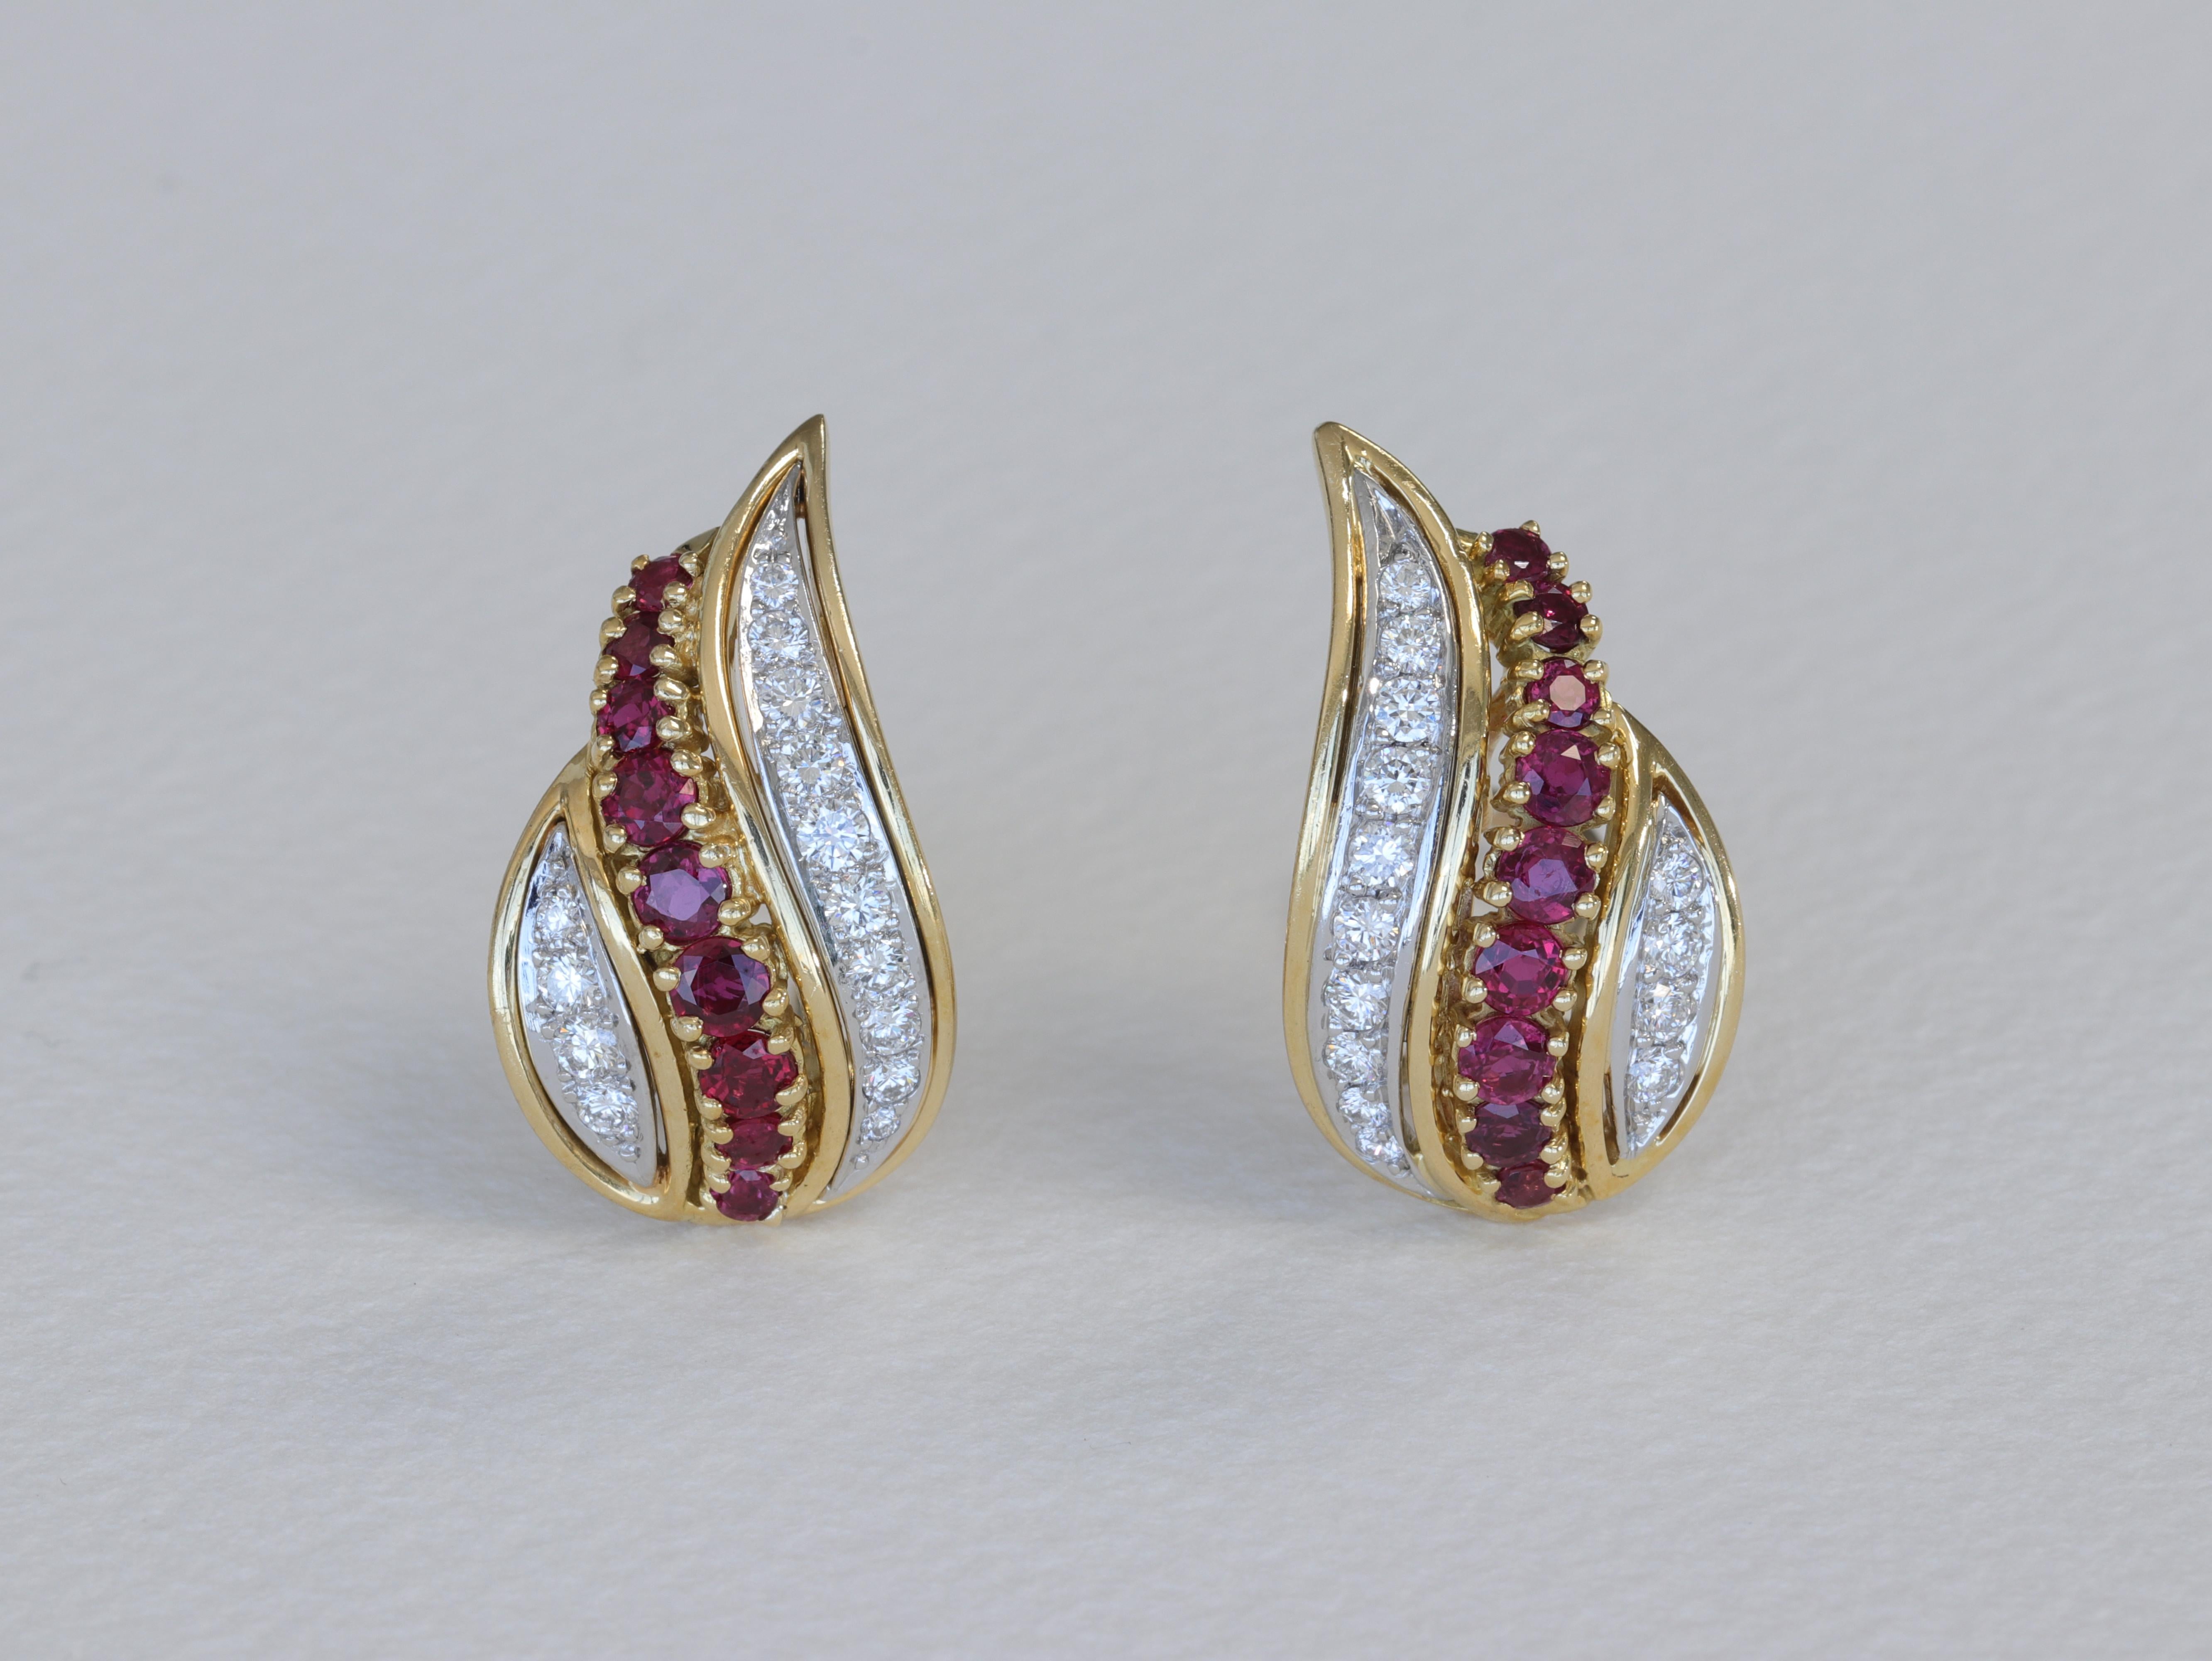 Ein besonderes Paar Ohrringe von Tiffany & Co. mit Paisley-Motiv aus rundgeschliffenen Diamanten und Rubinen, gefasst in 18 Karat Gelbgold und Platin mit Hebelverschluss. 

Die Diamanten wiegen insgesamt ca. 1,50 Karat, haben die Farben D-G und die